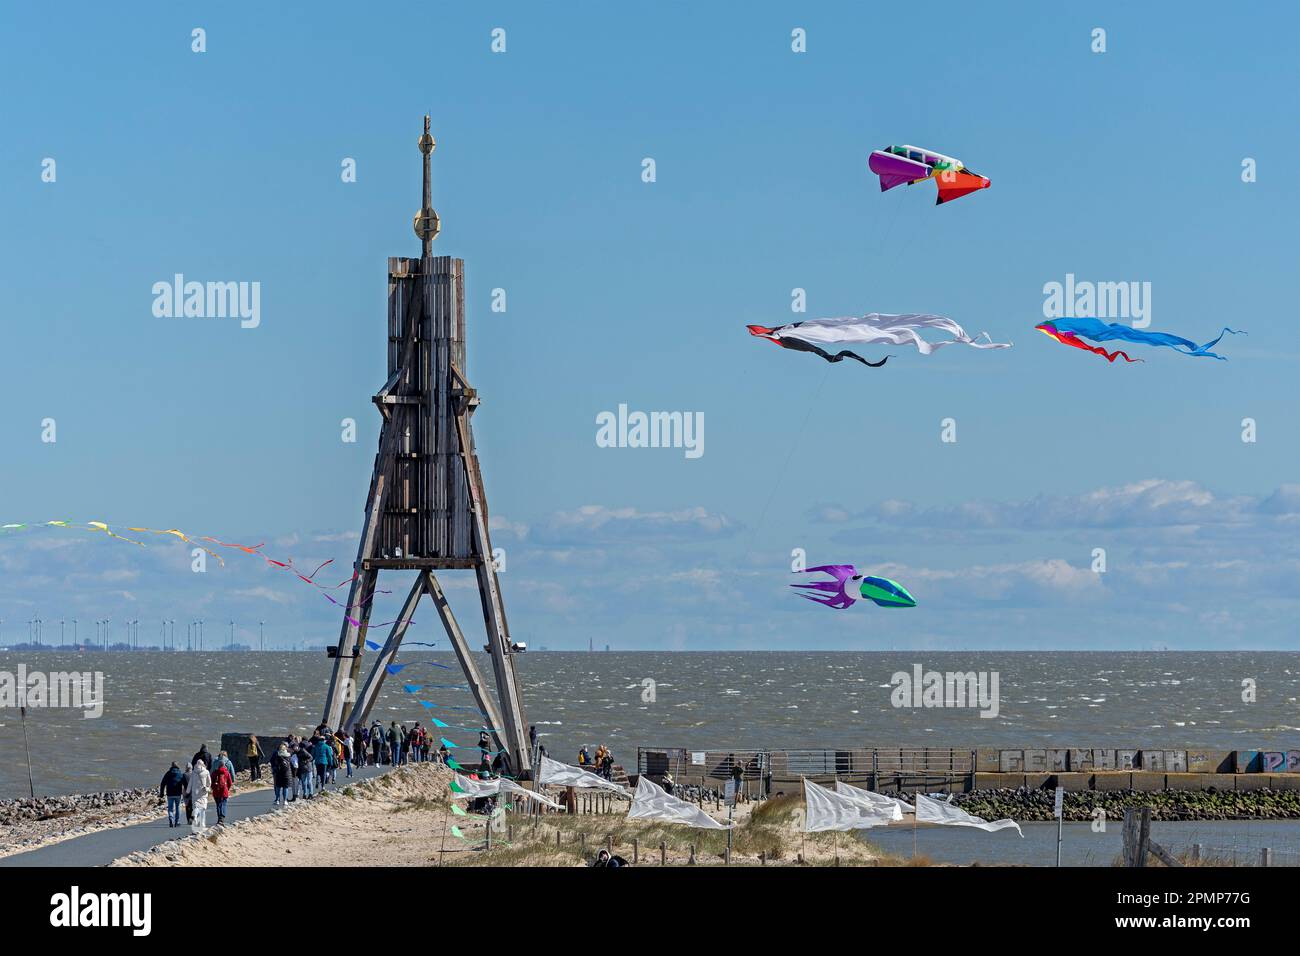 Menschen, fliegende Drachen, Seezeichen Kugelbake, Nordsee, Elbe, Cuxhaven, Niedersachsen, Deutschland Stockfoto